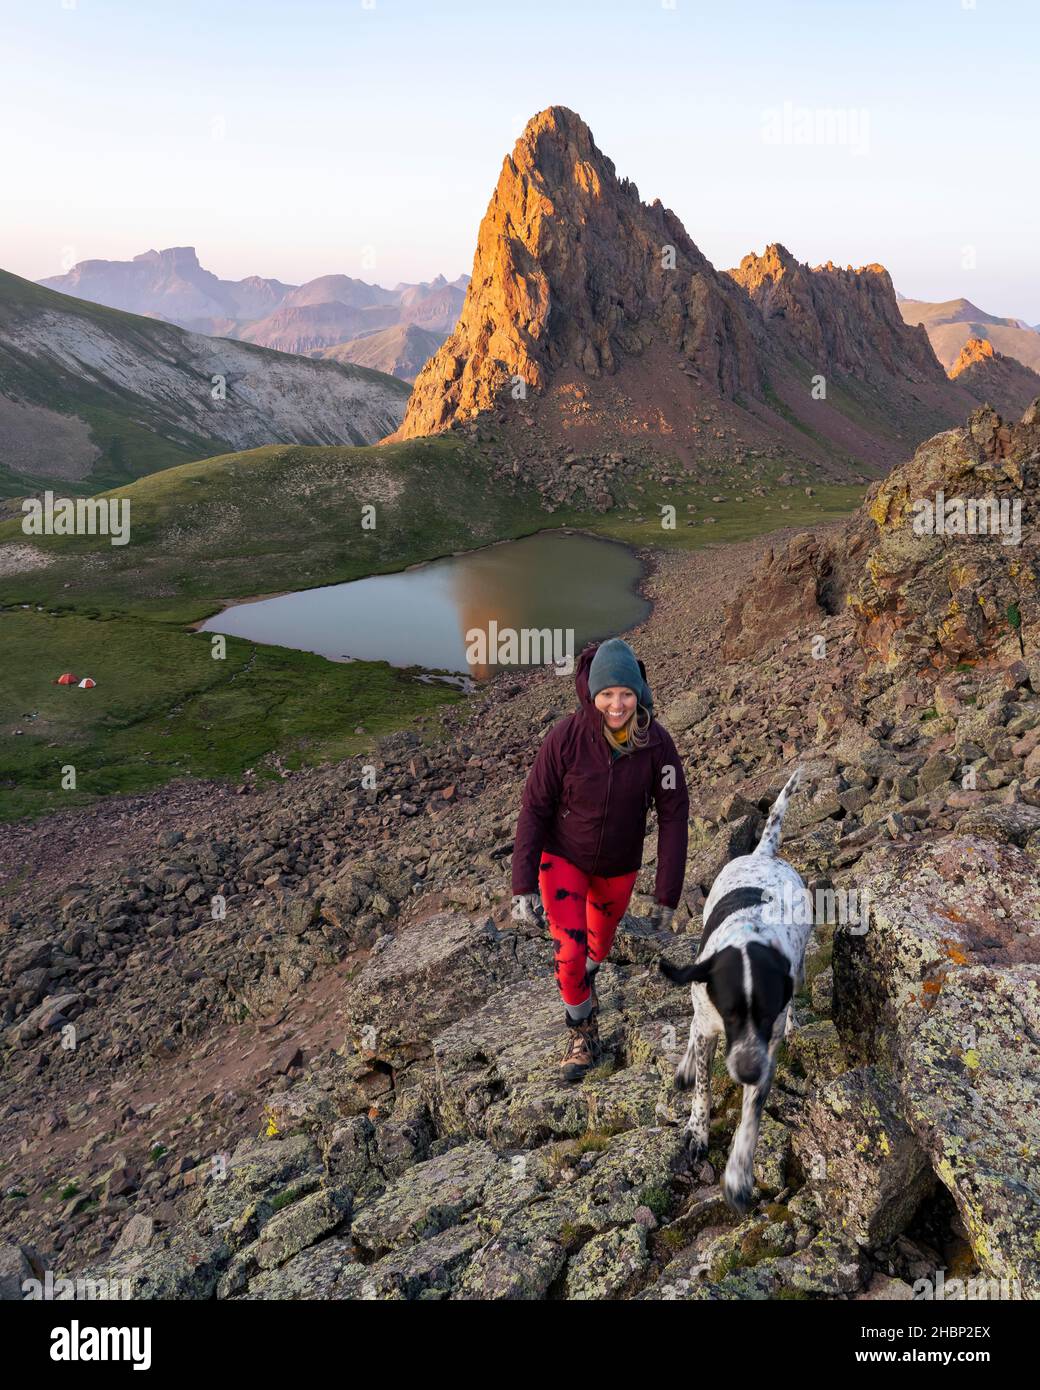 Randonnée pédestre avec un chien en montagne pendant les vacances Banque D'Images